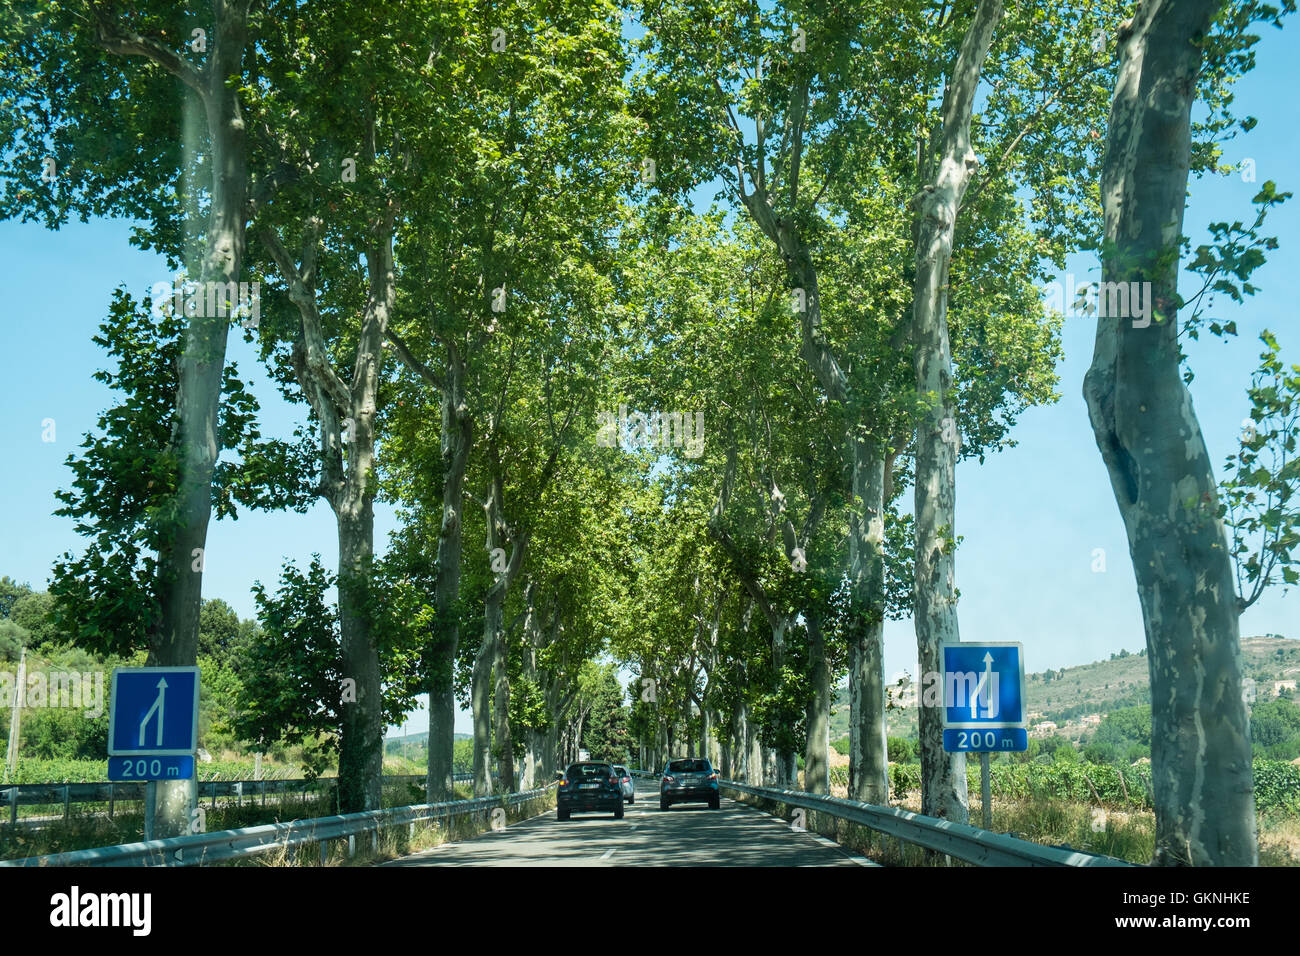 Platanen säumen die Straße, die D118 zwischen Limoux und Couiza in Aude, Südfrankreich, Frankreich, Europa. Stockfoto